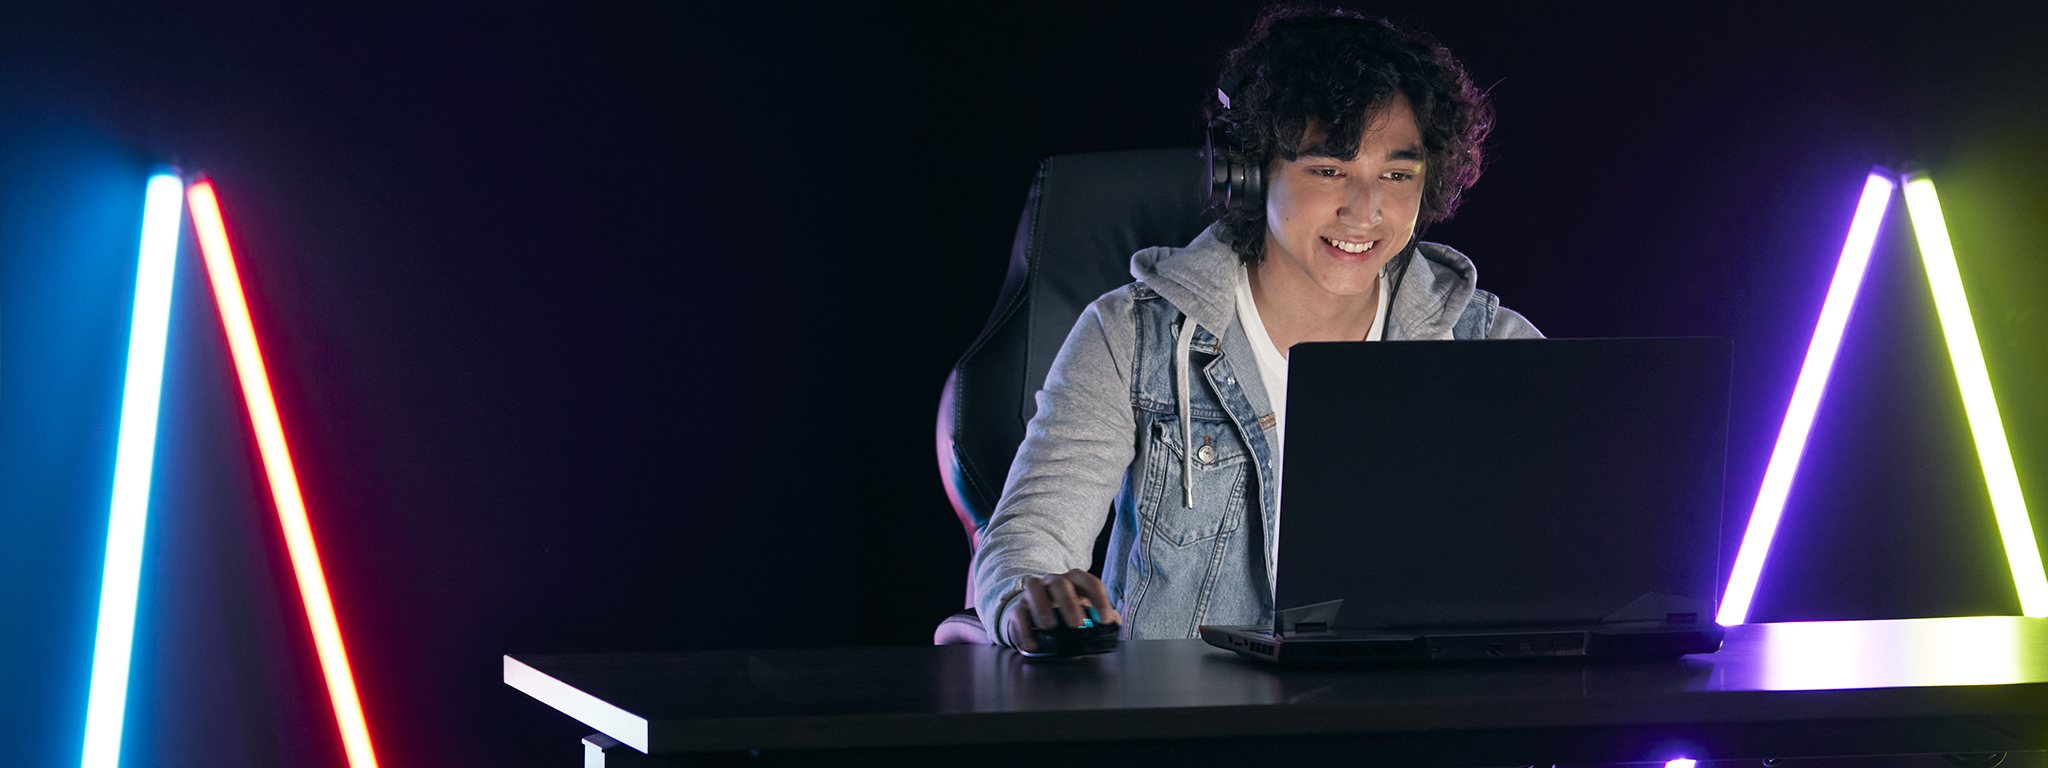 một game thủ trẻ đang chơi game trên máy tính xách tay trong căn phòng tối